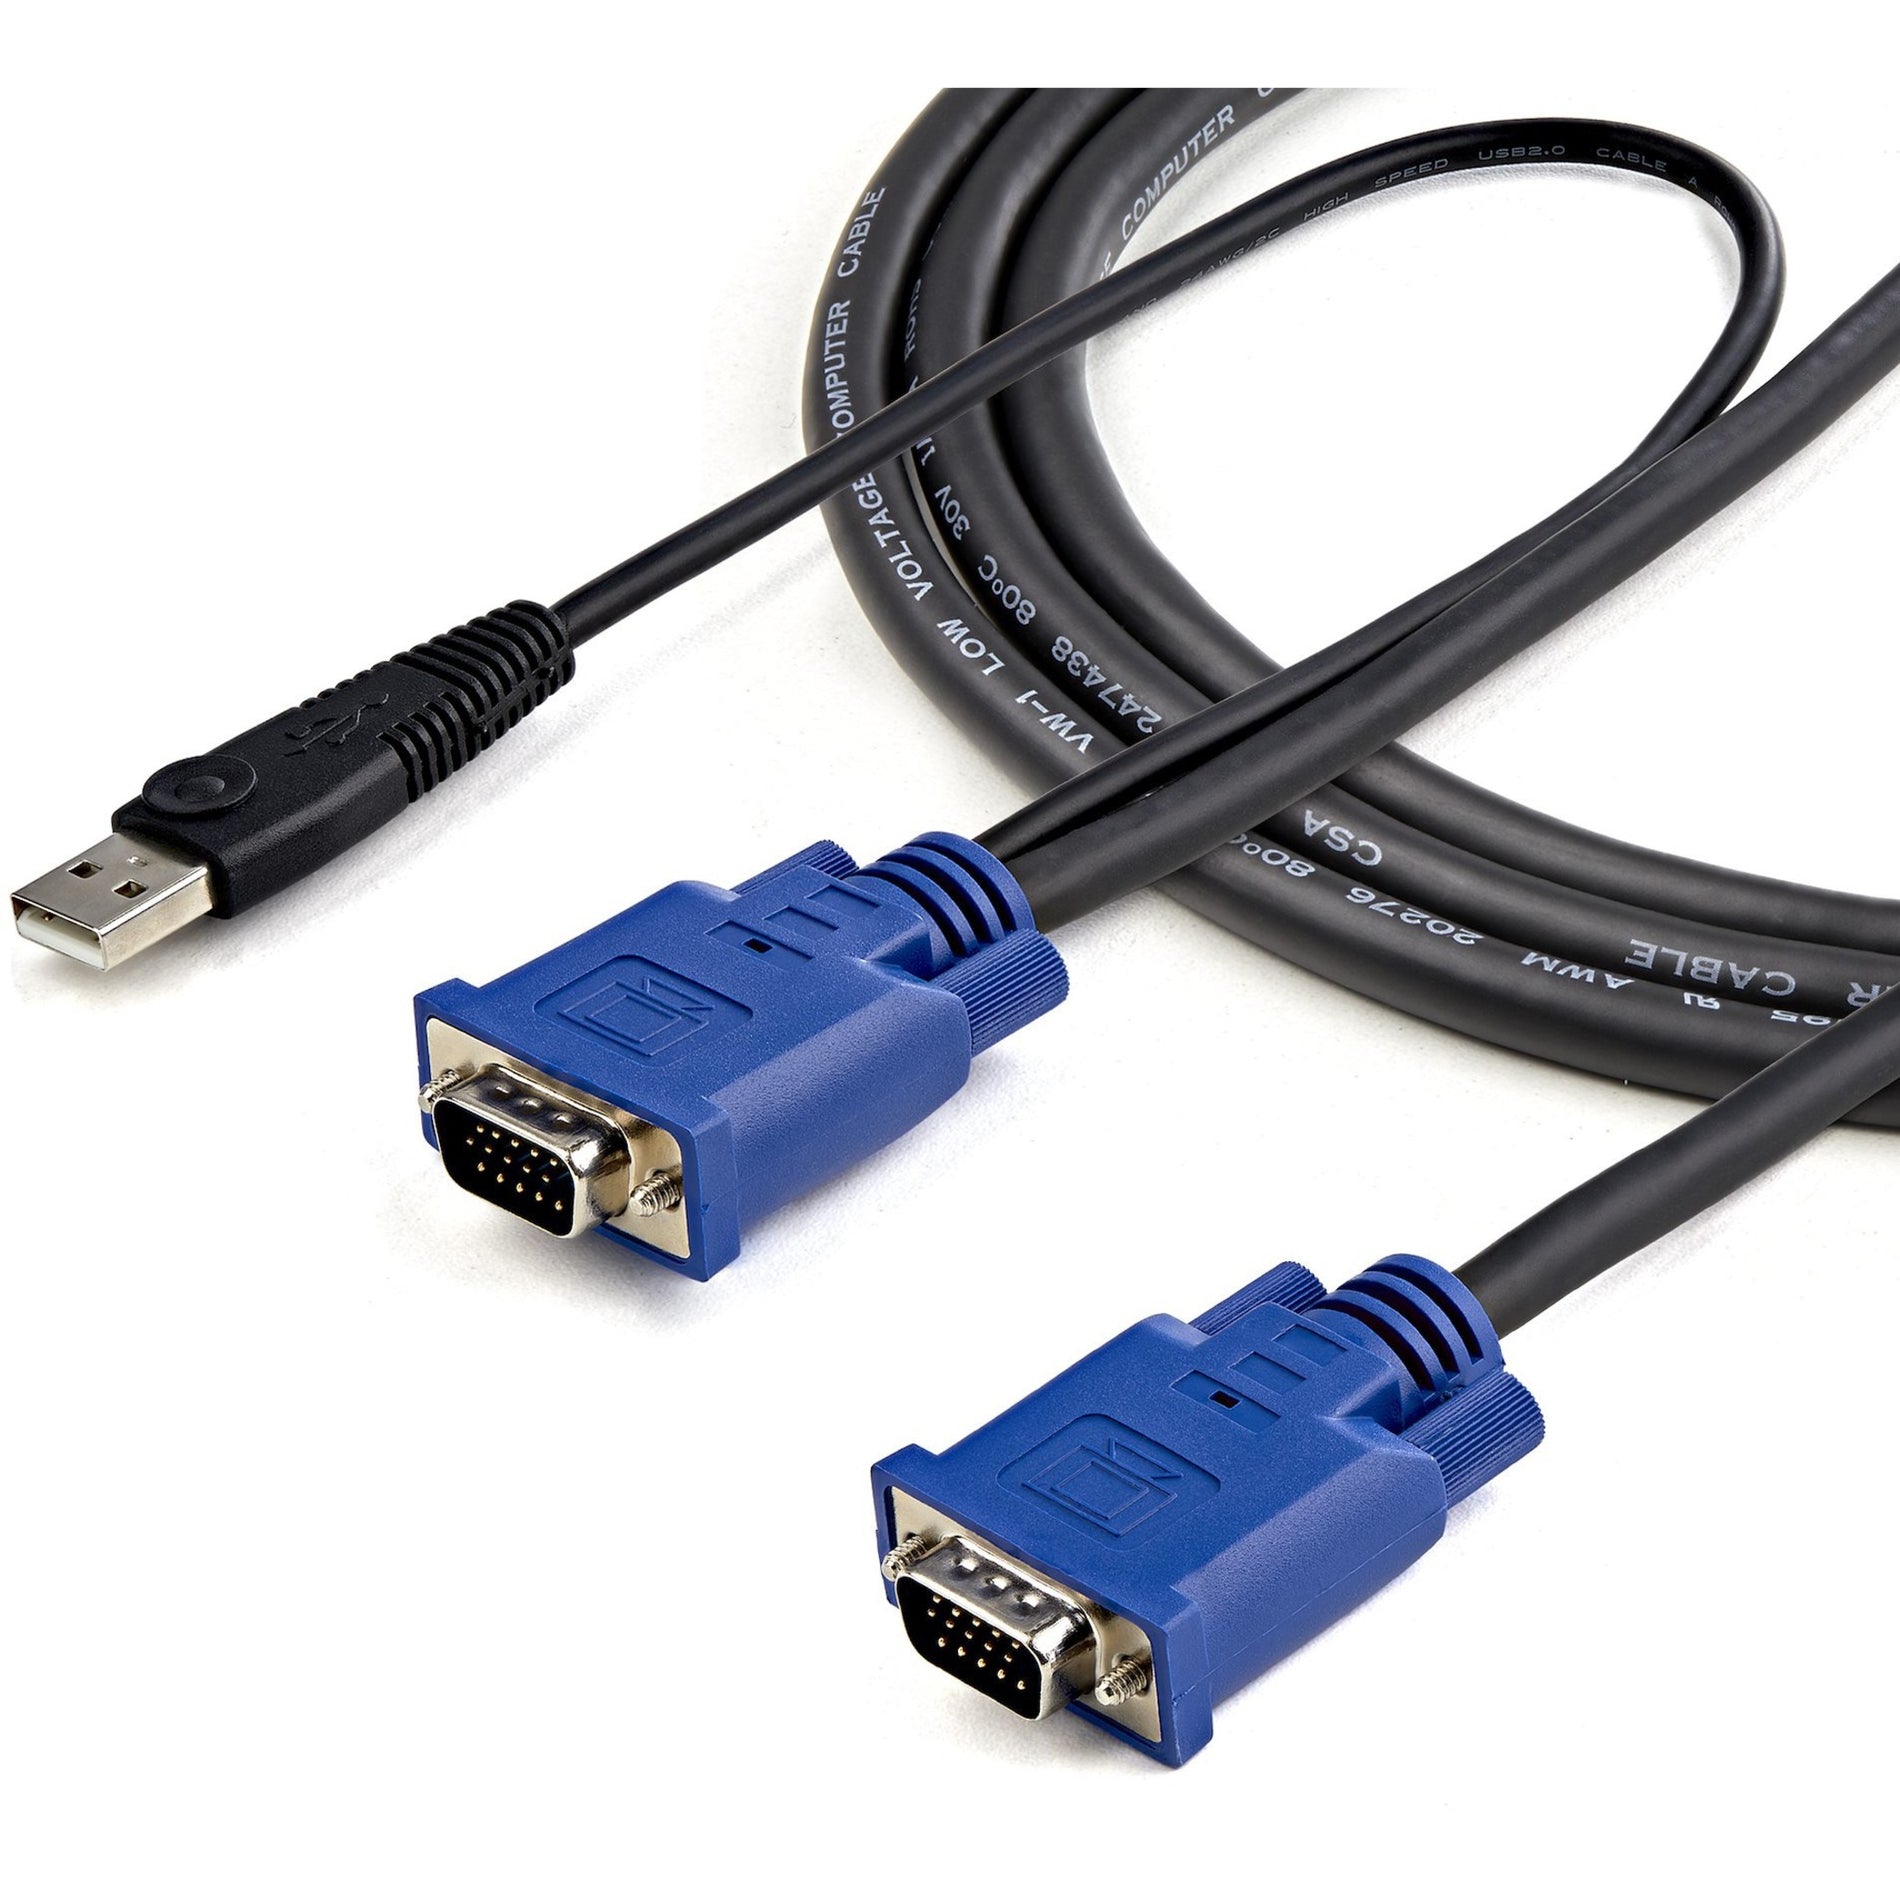 StarTech.com SVECONUS6 Ultra Thin USB KVM Cable, 6 ft, Tangle-free, Black